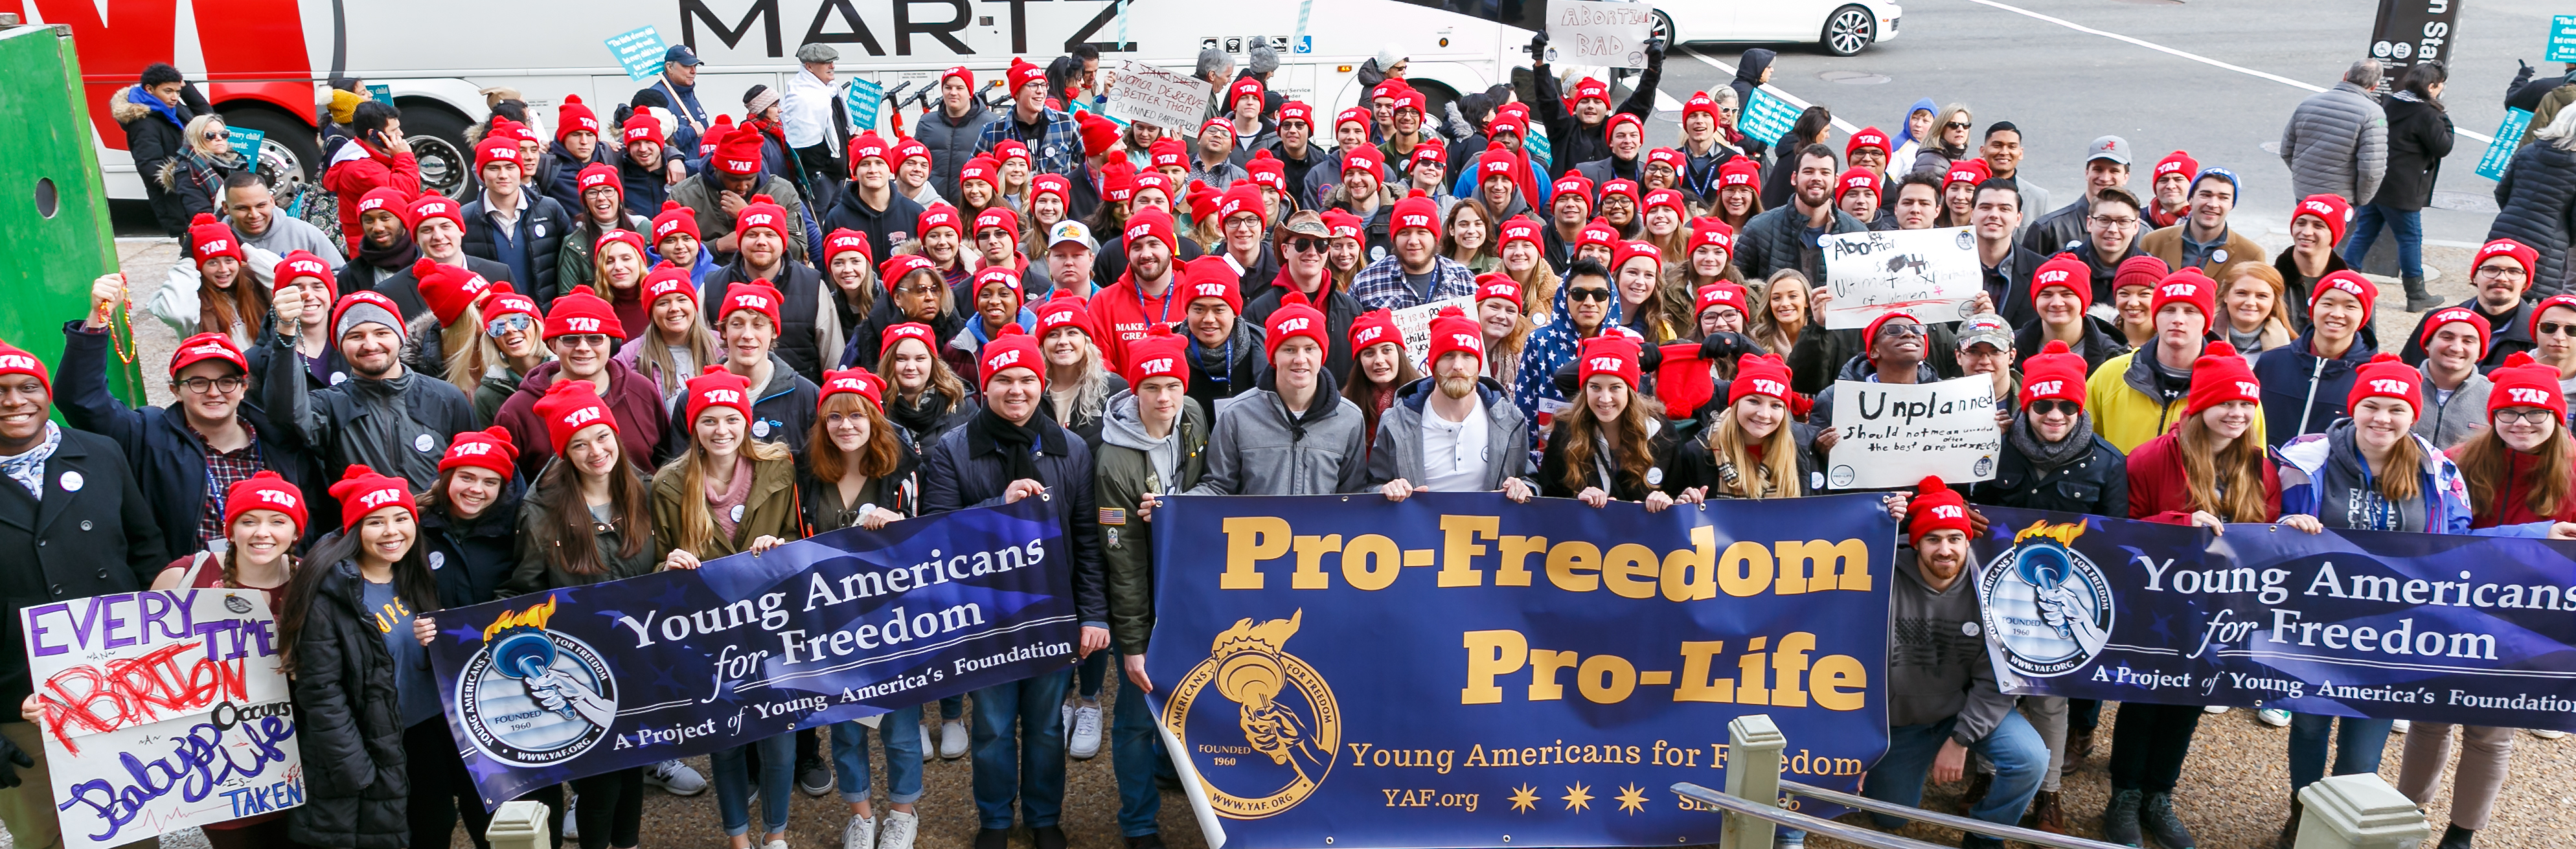 pro-life freedom